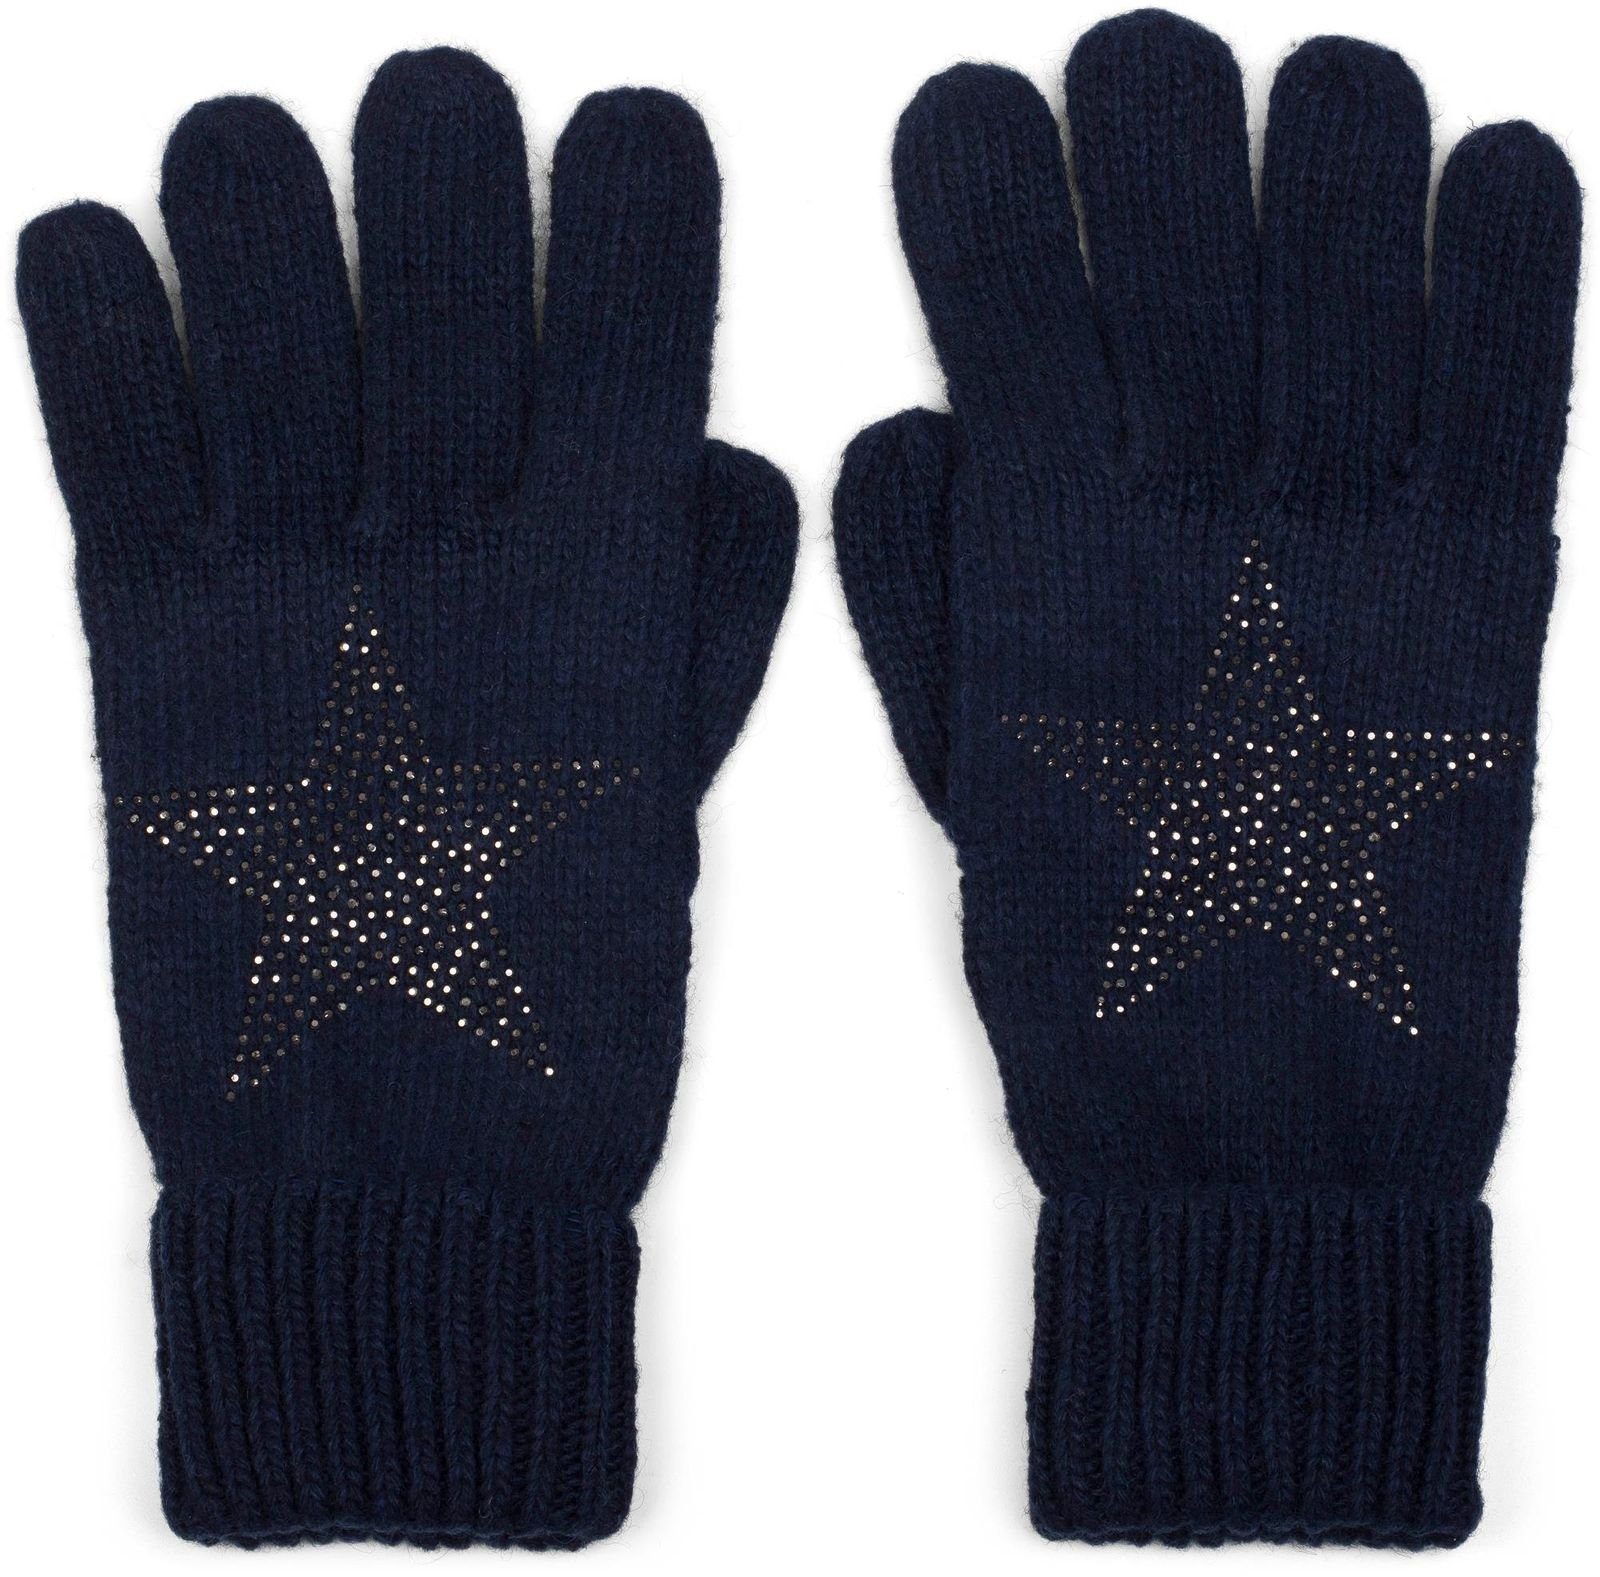 styleBREAKER Strickhandschuhe Strick Handschuhe mit Strass Stern Midnight-Blue / Dunkelblau